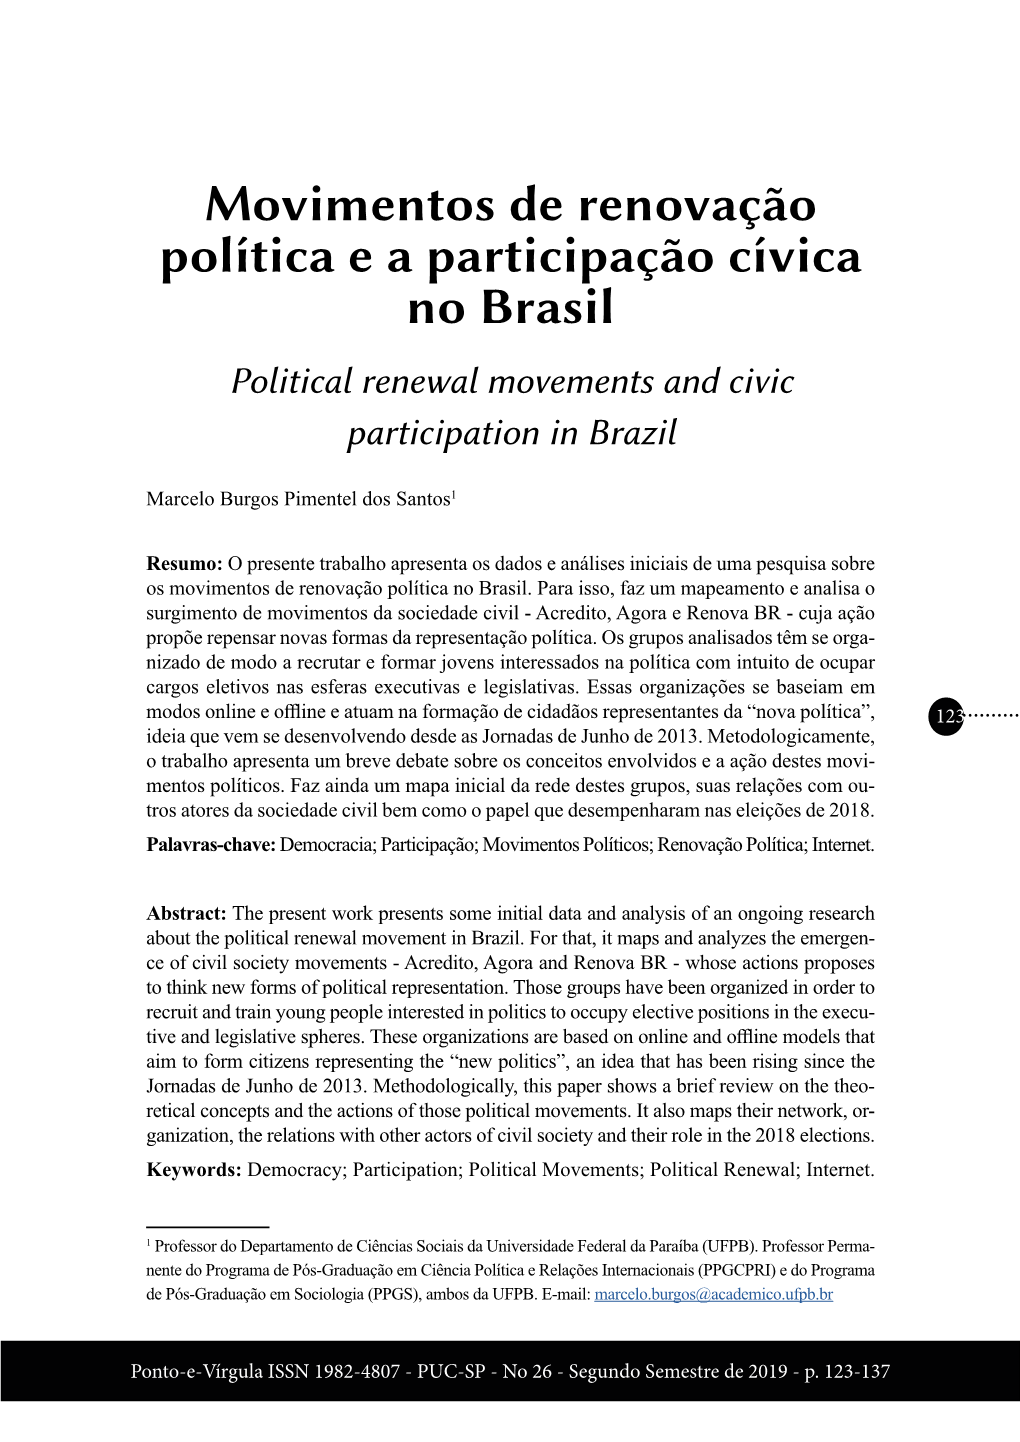 Movimentos De Renovação Política E a Participação Cívica No Brasil Political Renewal Movements and Civic Participation in Brazil